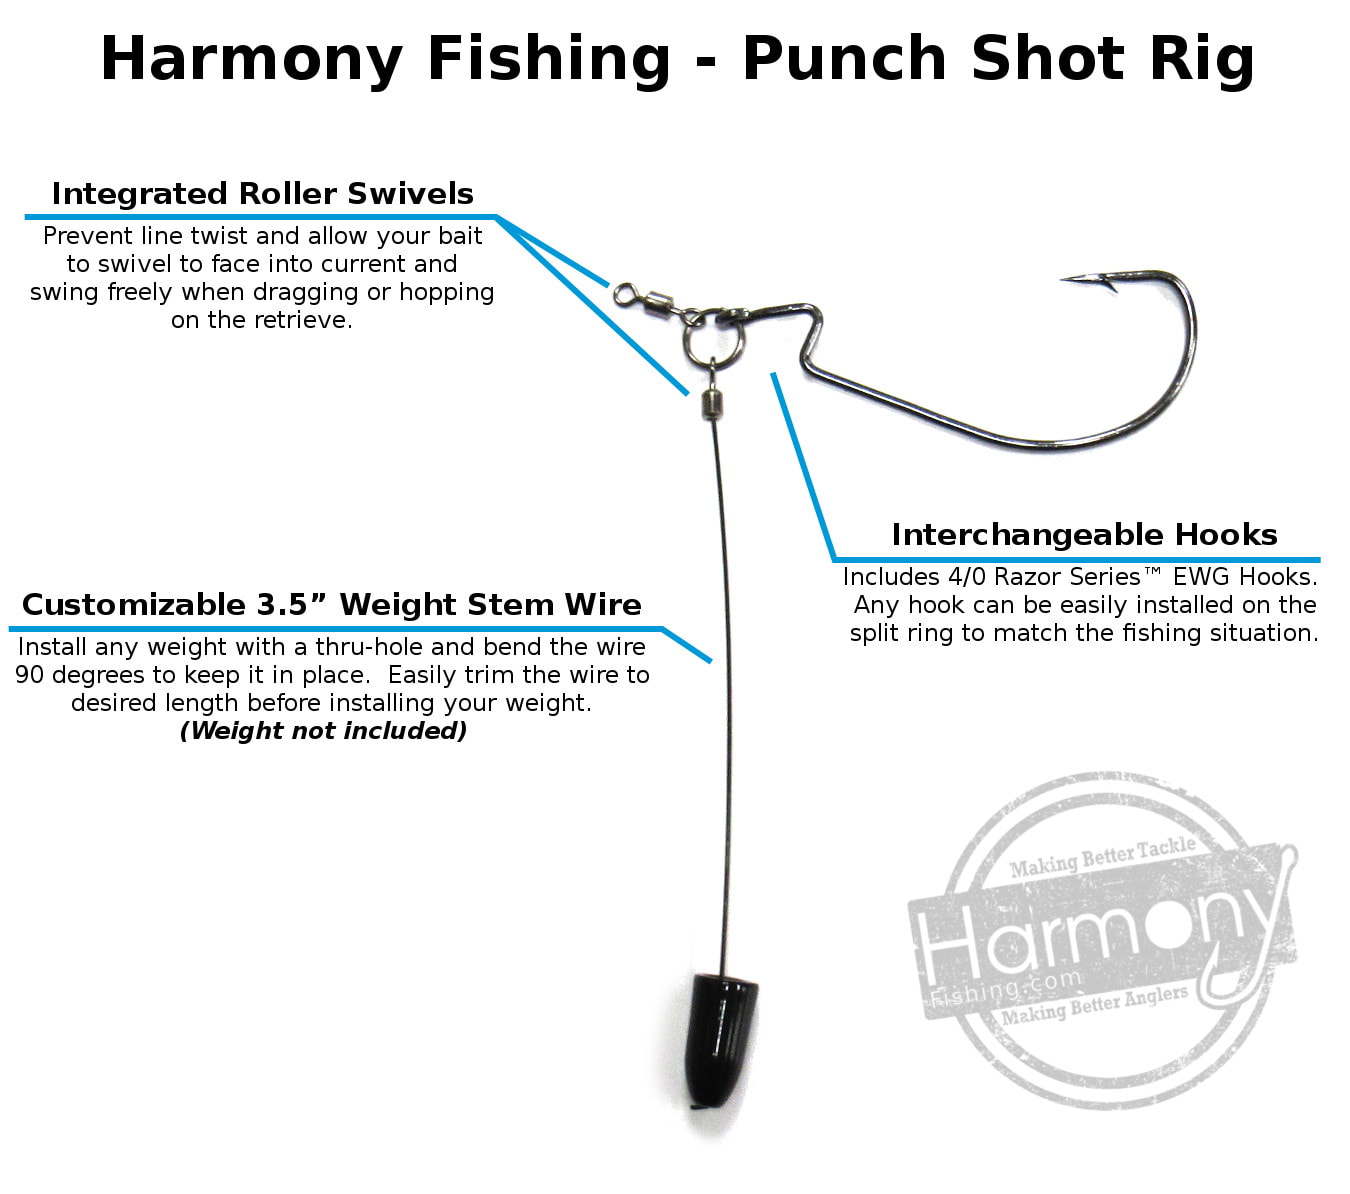 Punch Shot Kit - Harmony Fishing Company